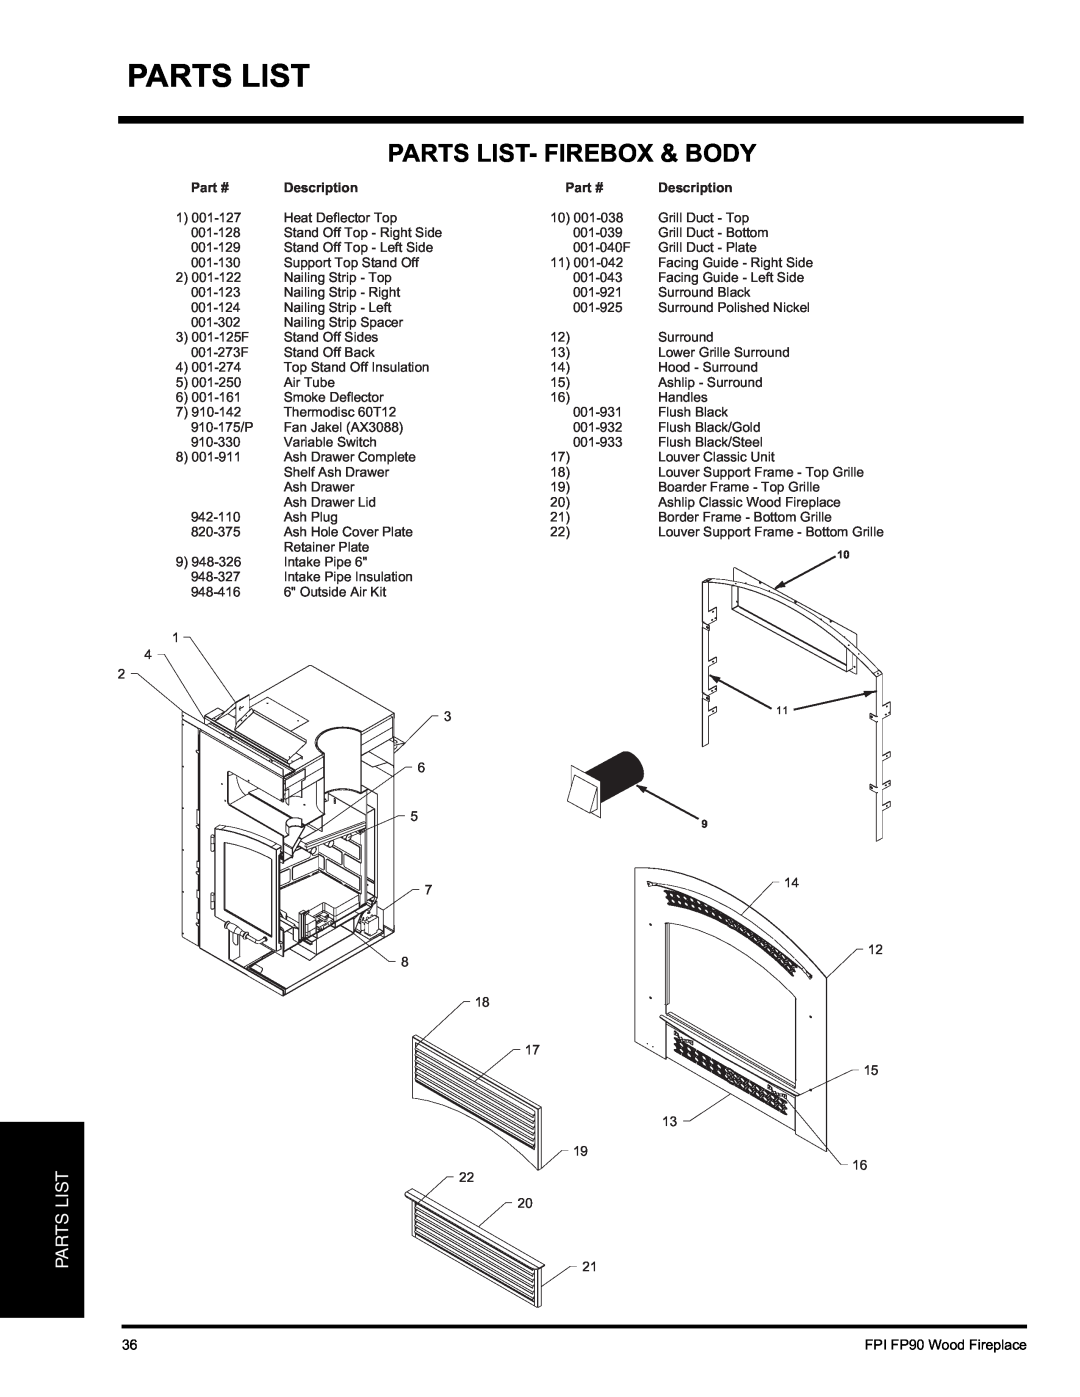 Regency FP90 installation manual Parts List- Firebox & Body, Description 